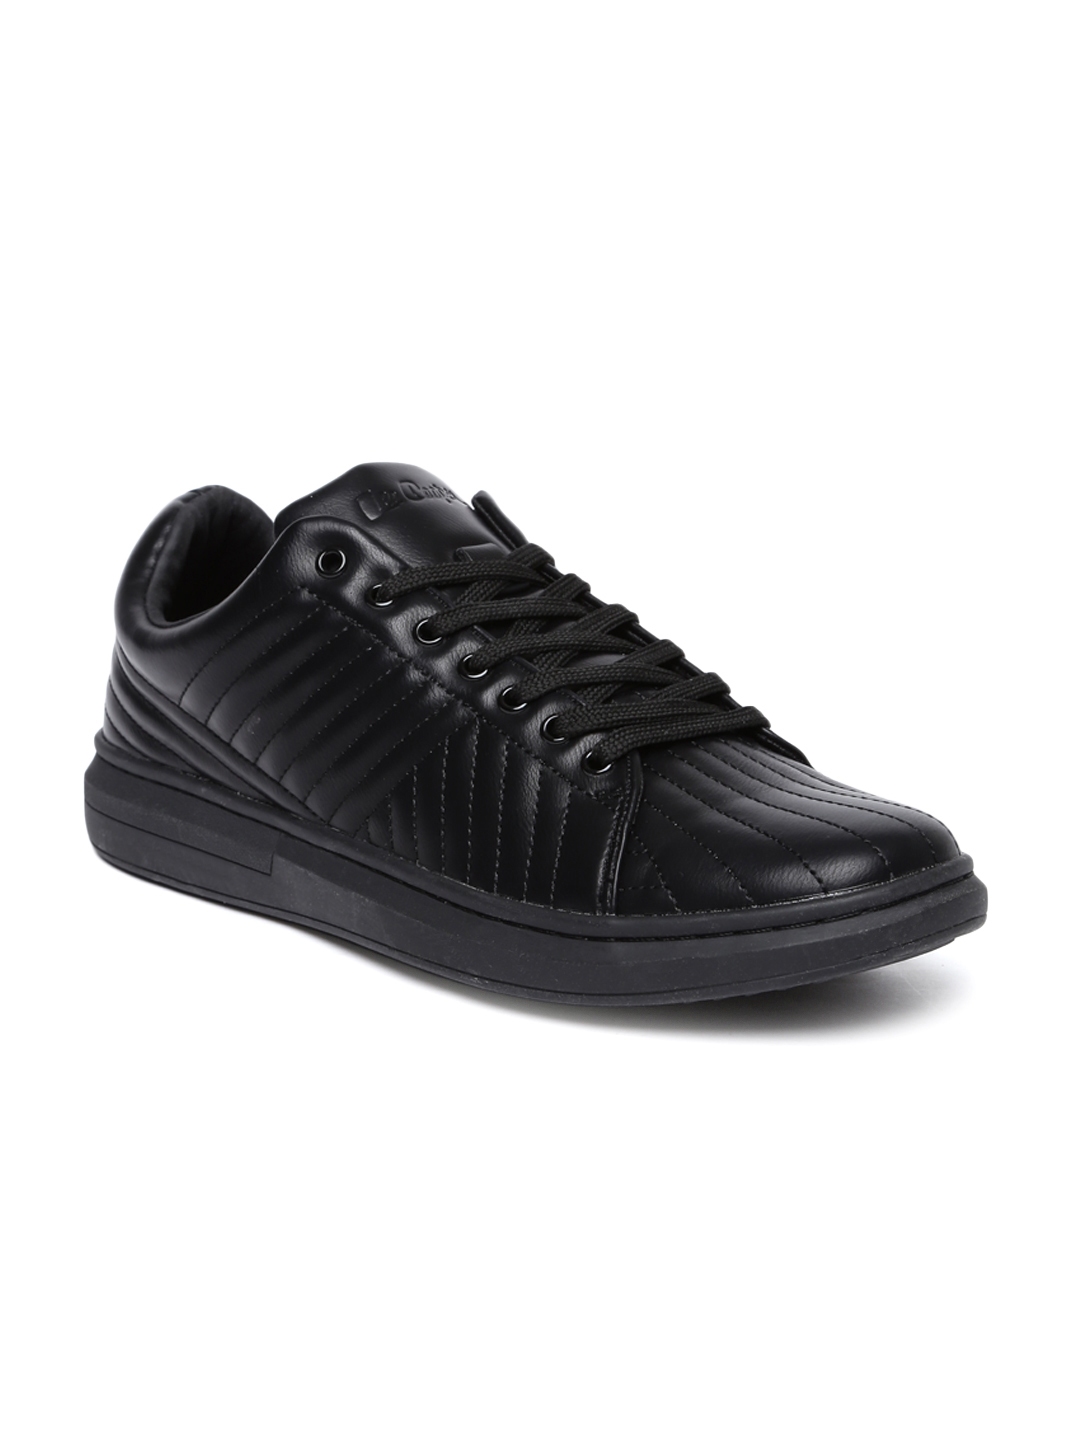 lee cooper black sneakers